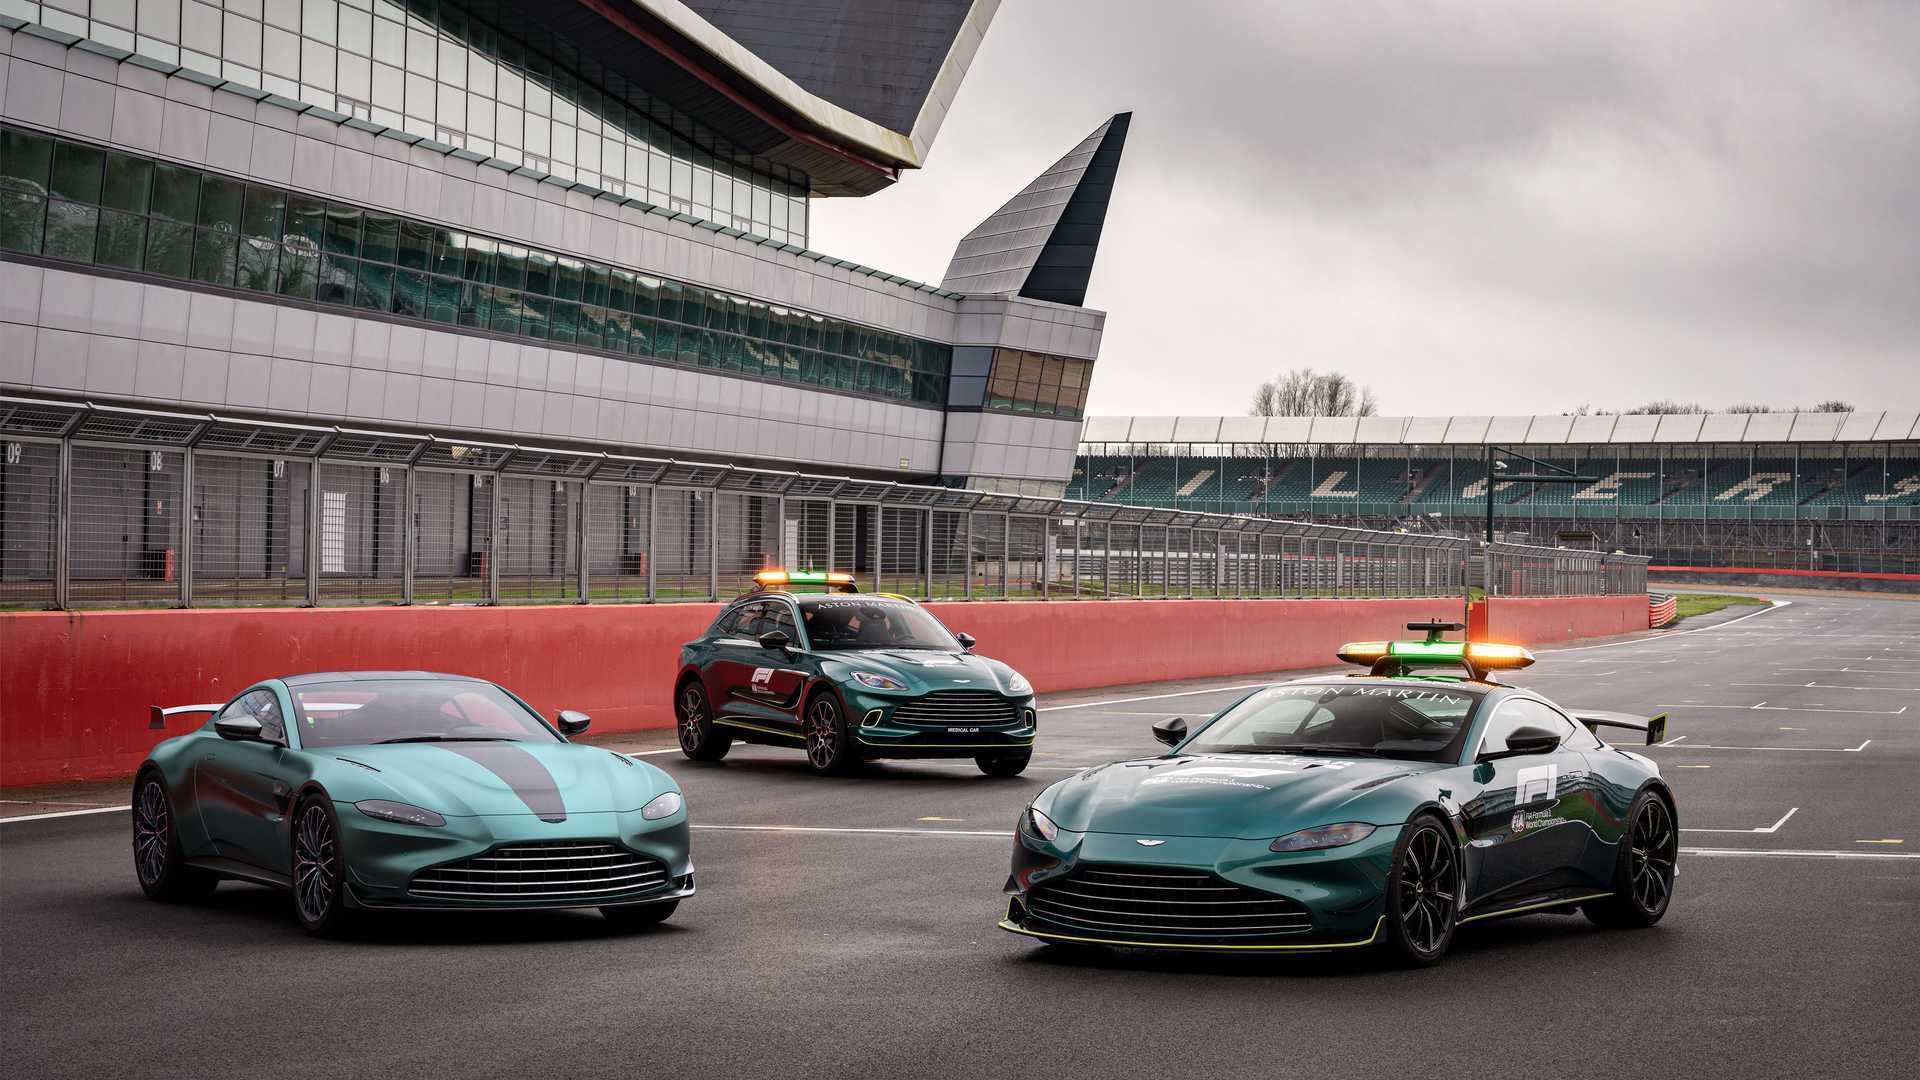 В этом году автомобили Aston Martin будут выполнять роль официальных машин безопасности на этапах чемпионата Формулы-1